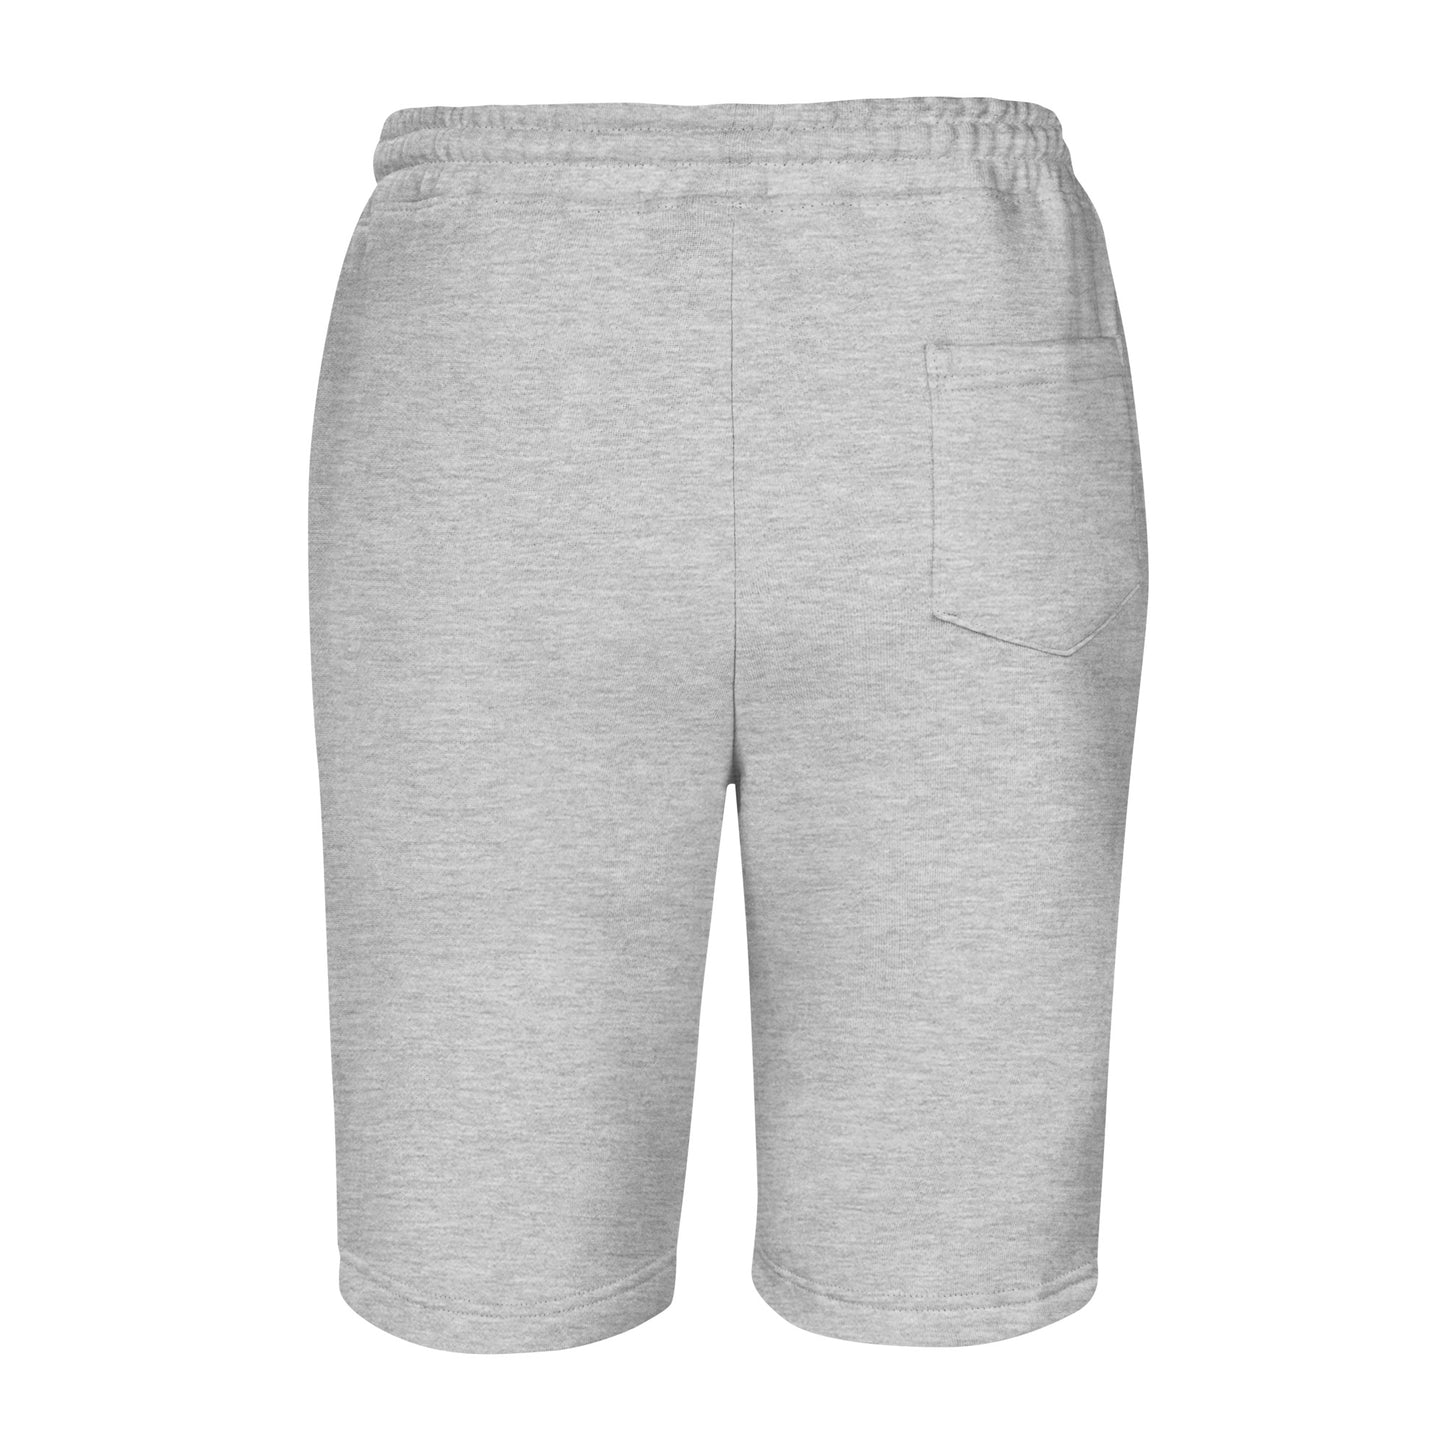 Múcaro’s Really Sexy fleece shorts